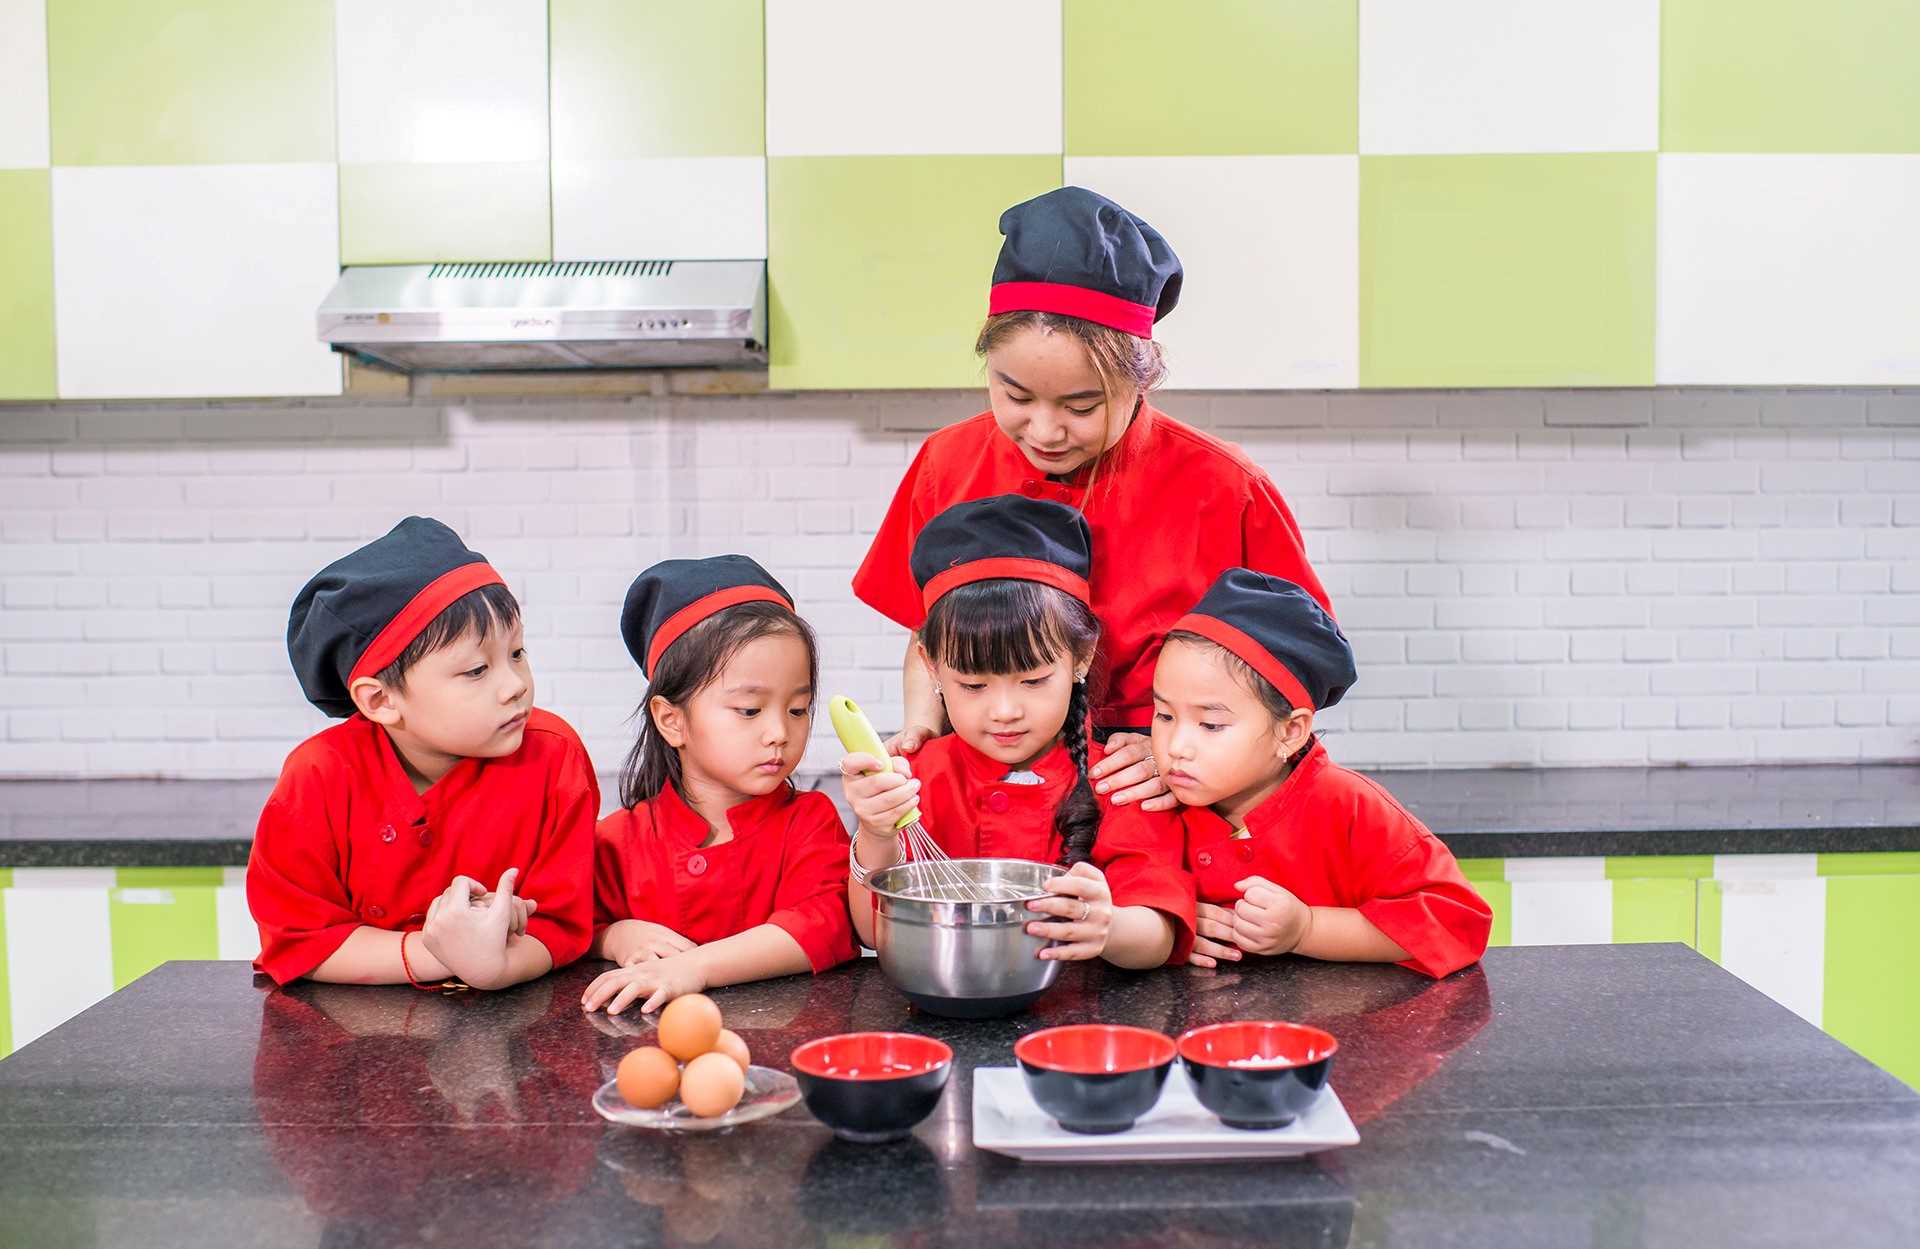 Mô hình hướng nghiệp “Bếp trưởng nhí” dành cho các bé